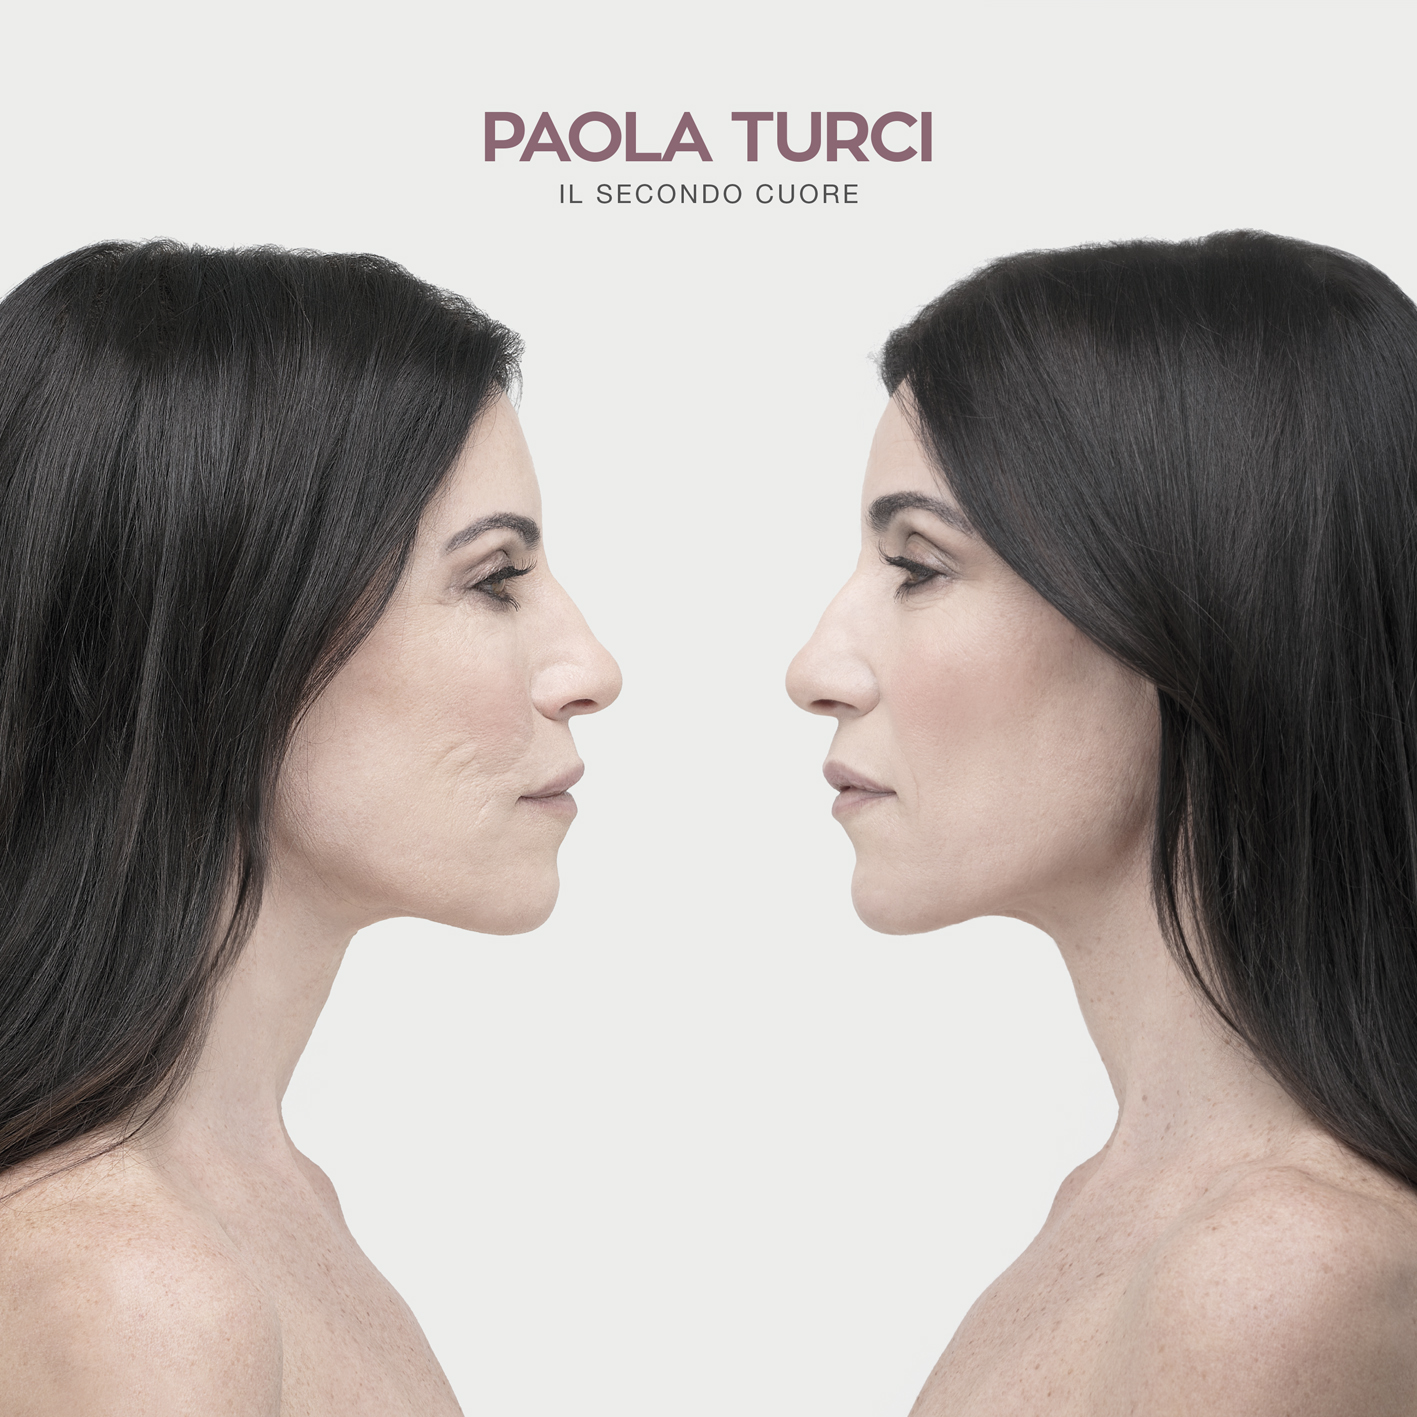 Paola Turci - Il secondo cuore- cover album